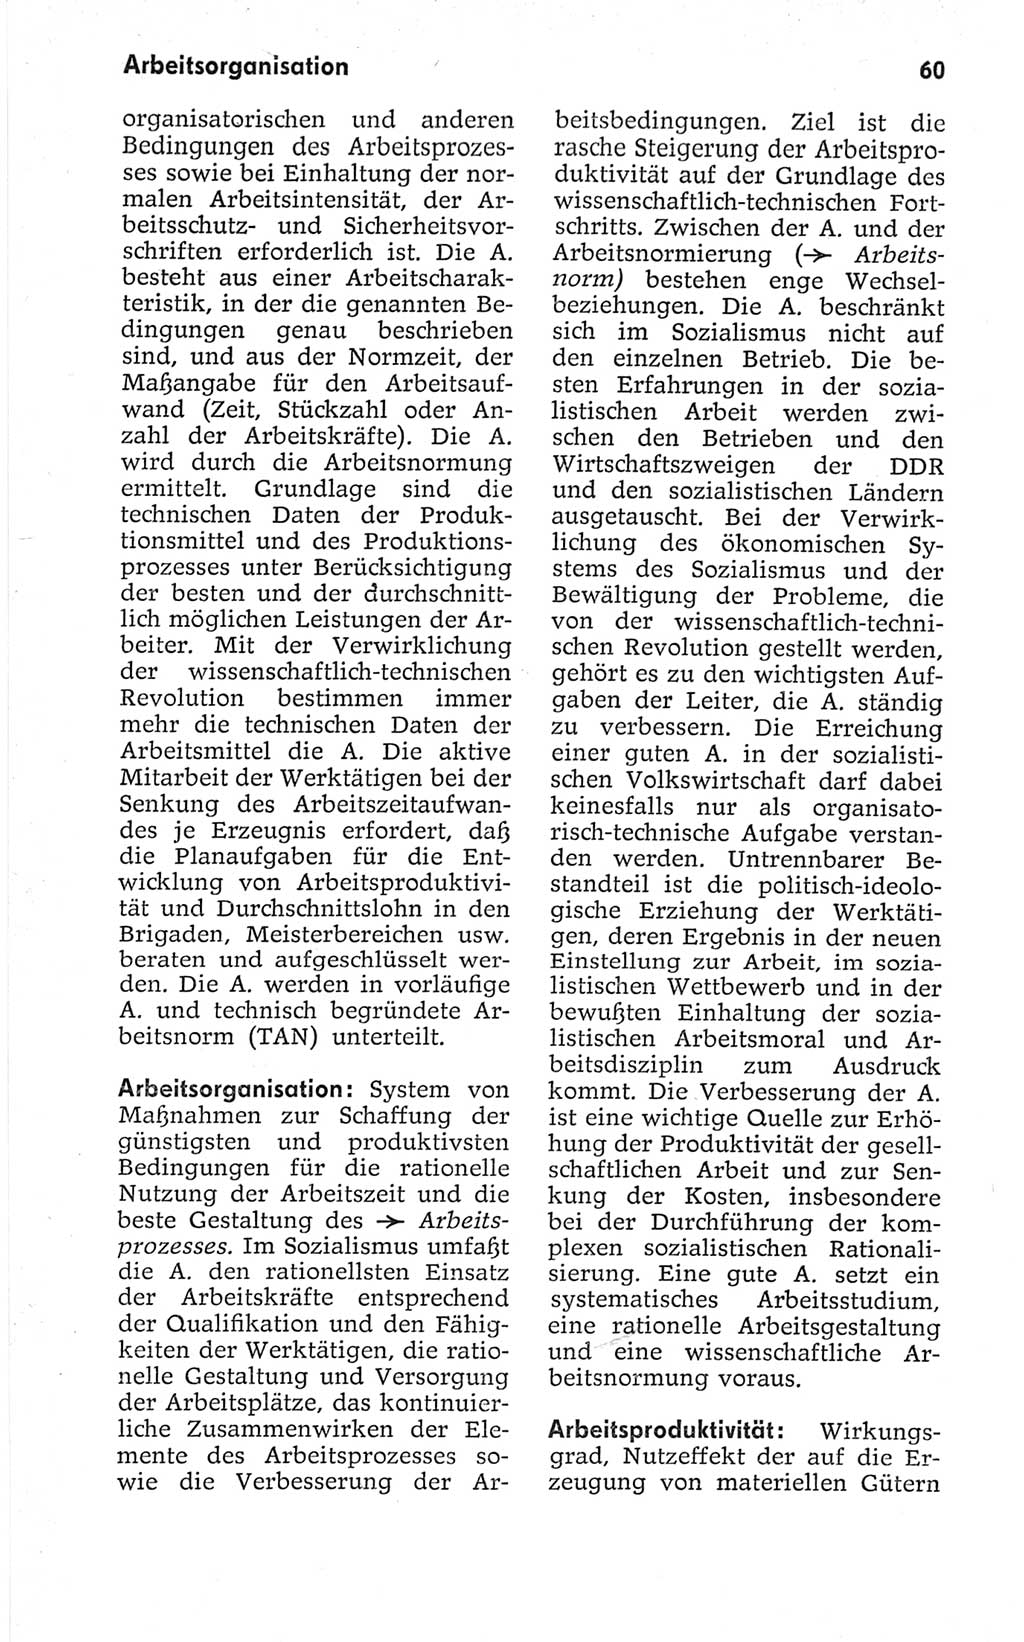 Kleines politisches Wörterbuch [Deutsche Demokratische Republik (DDR)] 1967, Seite 60 (Kl. pol. Wb. DDR 1967, S. 60)